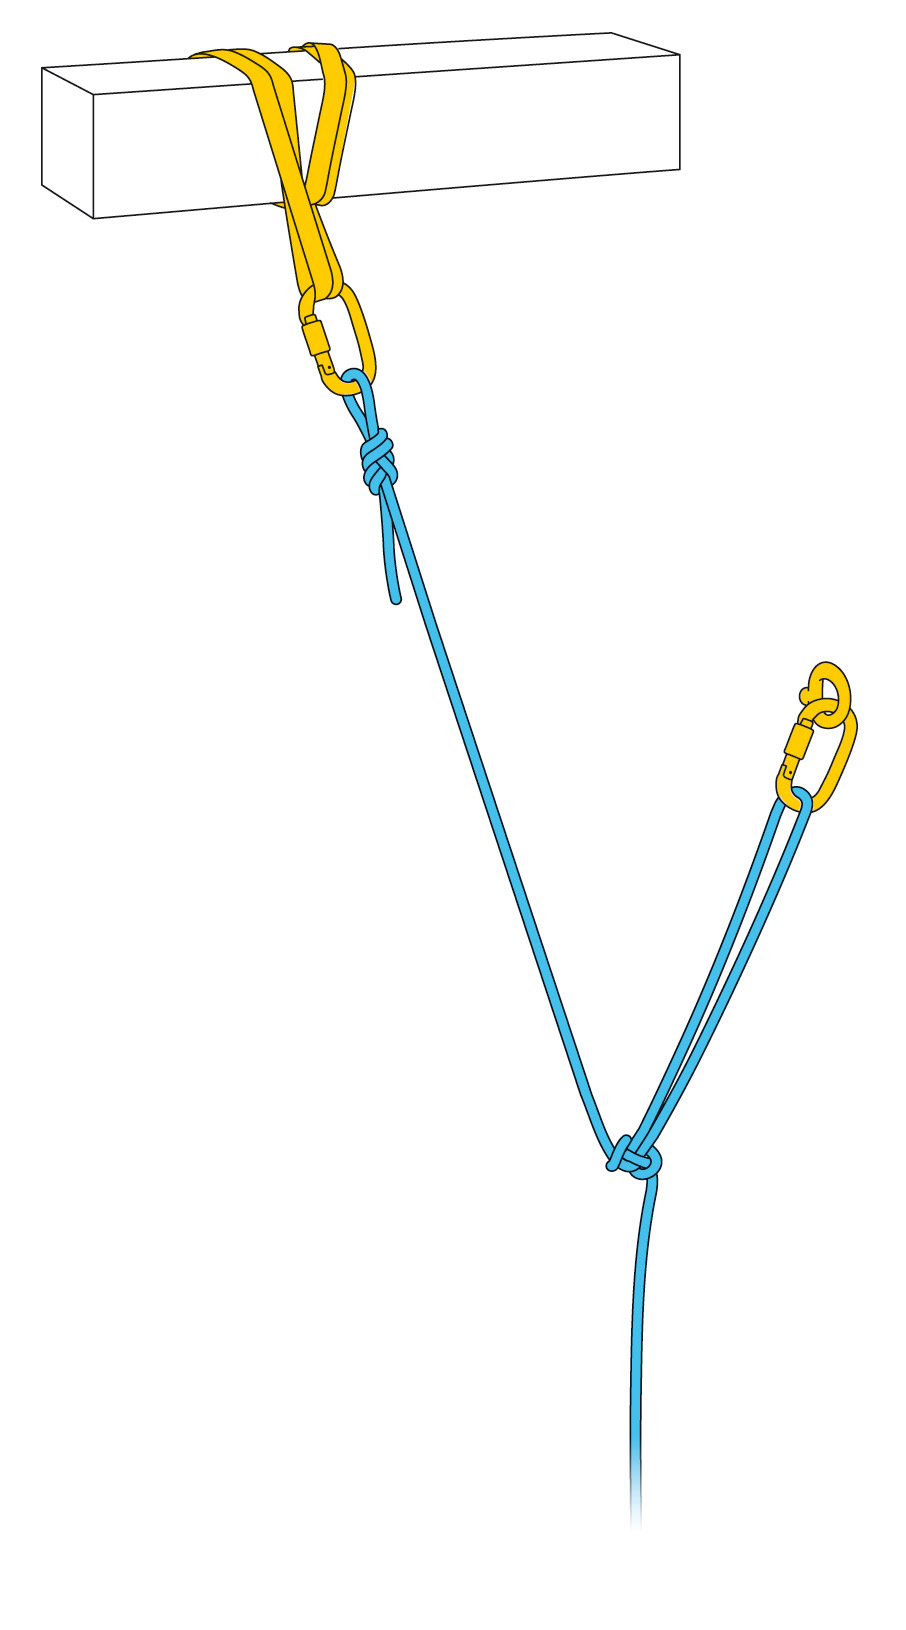 Può anche servire all’equilibrio di ancoraggi spostati in abbinamento con un nodo a otto.